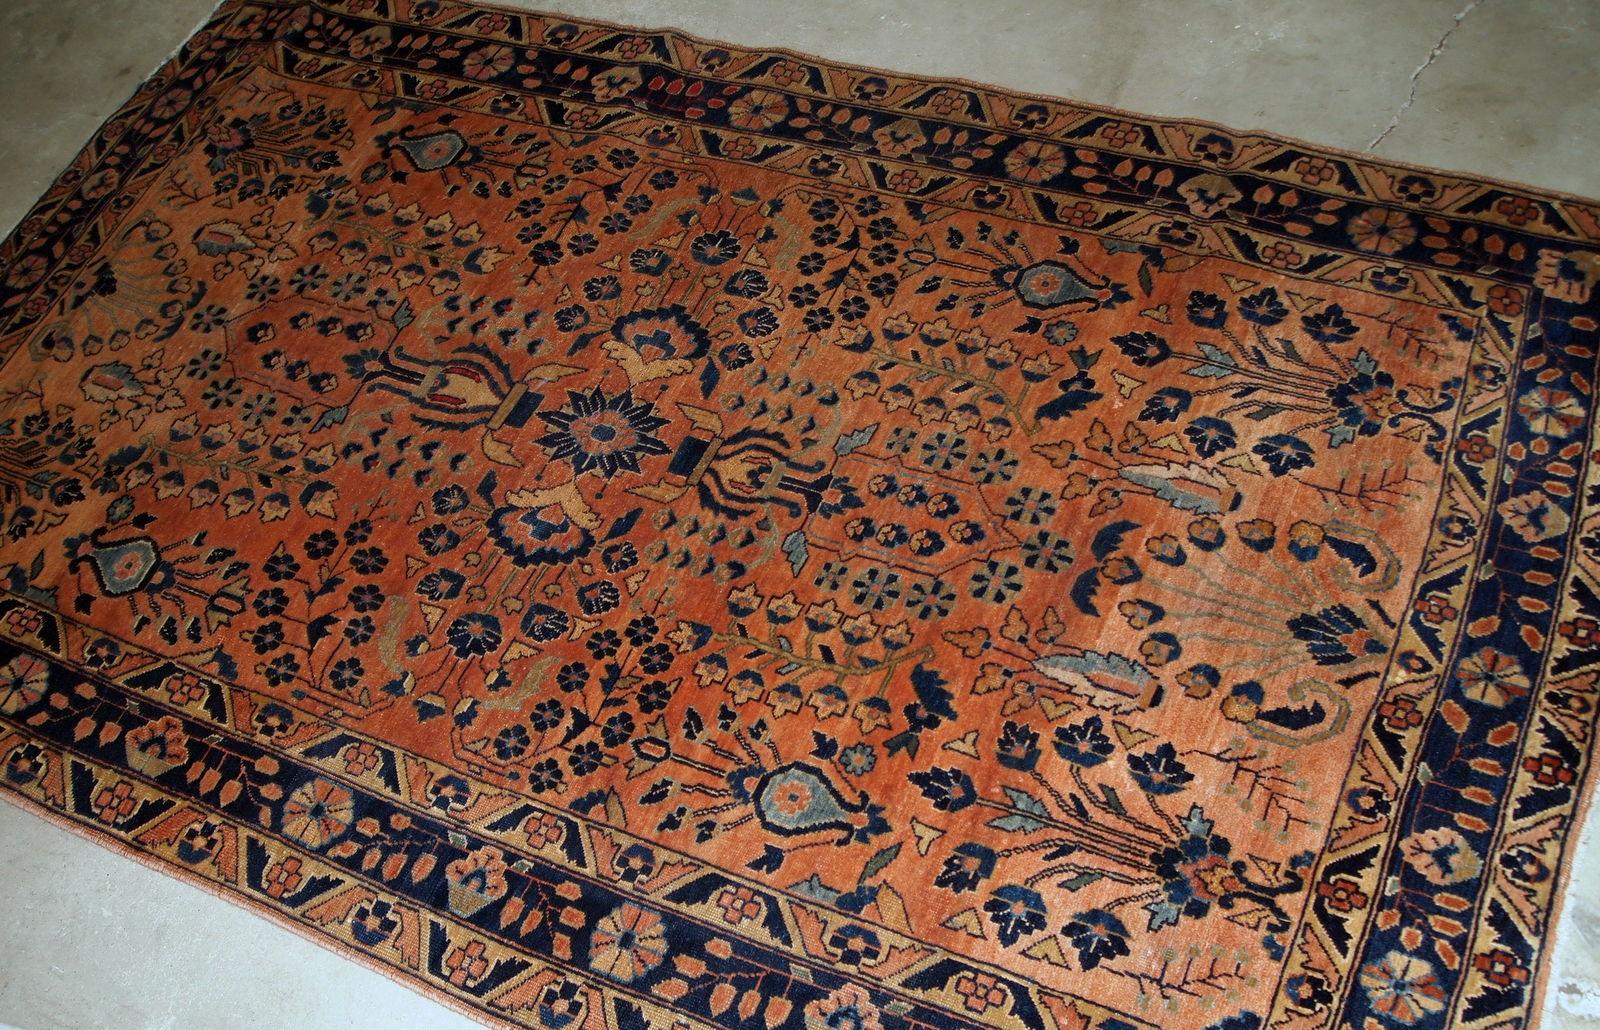 Handgefertigter antiker Sarouk-Teppich in gutem Originalzustand. Der Teppich wurde zu Beginn des 20. Jahrhunderts aus roter Wolle hergestellt.

?-Zustand: original gut,

-um: 1920er Jahre,

-größe: 4' x 6.4' (125cm x 195cm),

-material: